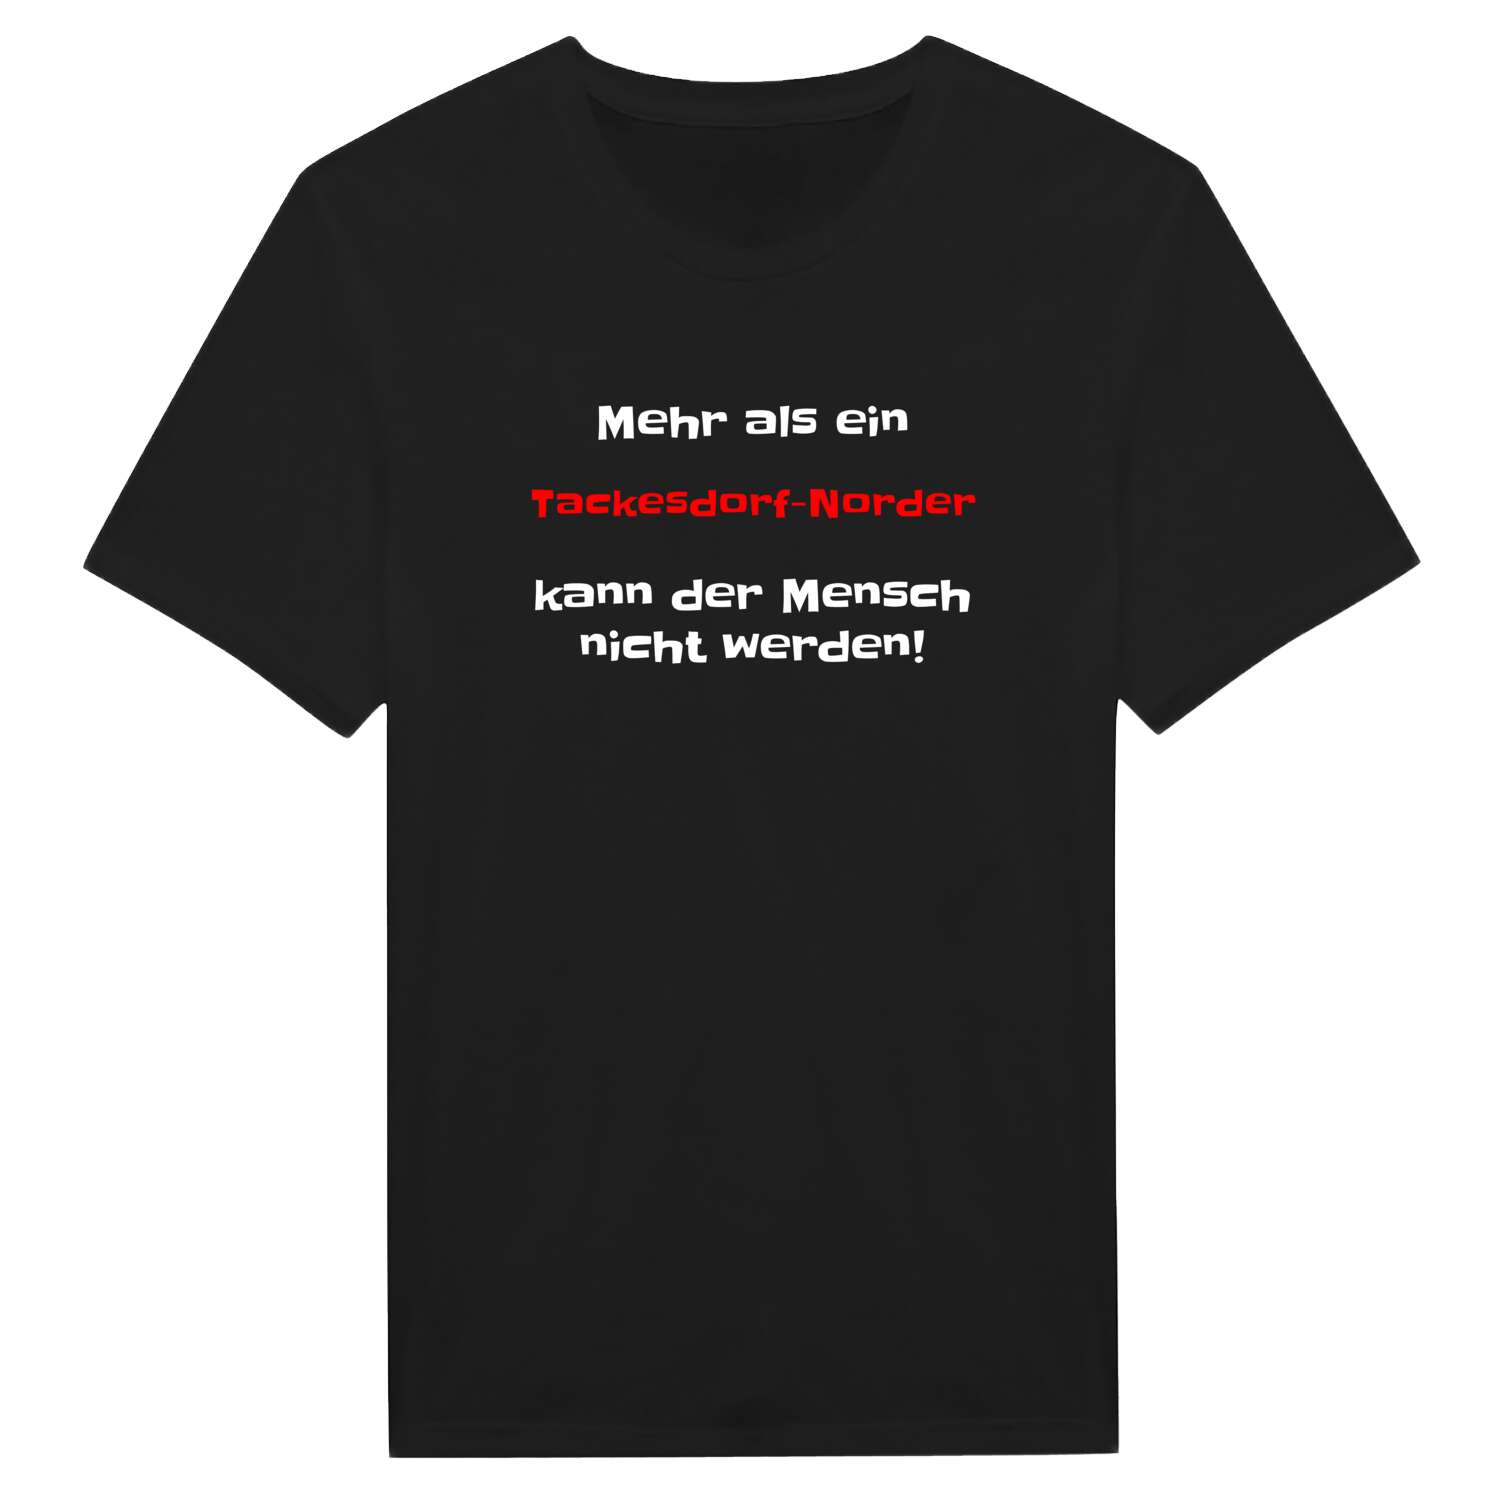 Tackesdorf-Nord T-Shirt »Mehr als ein«